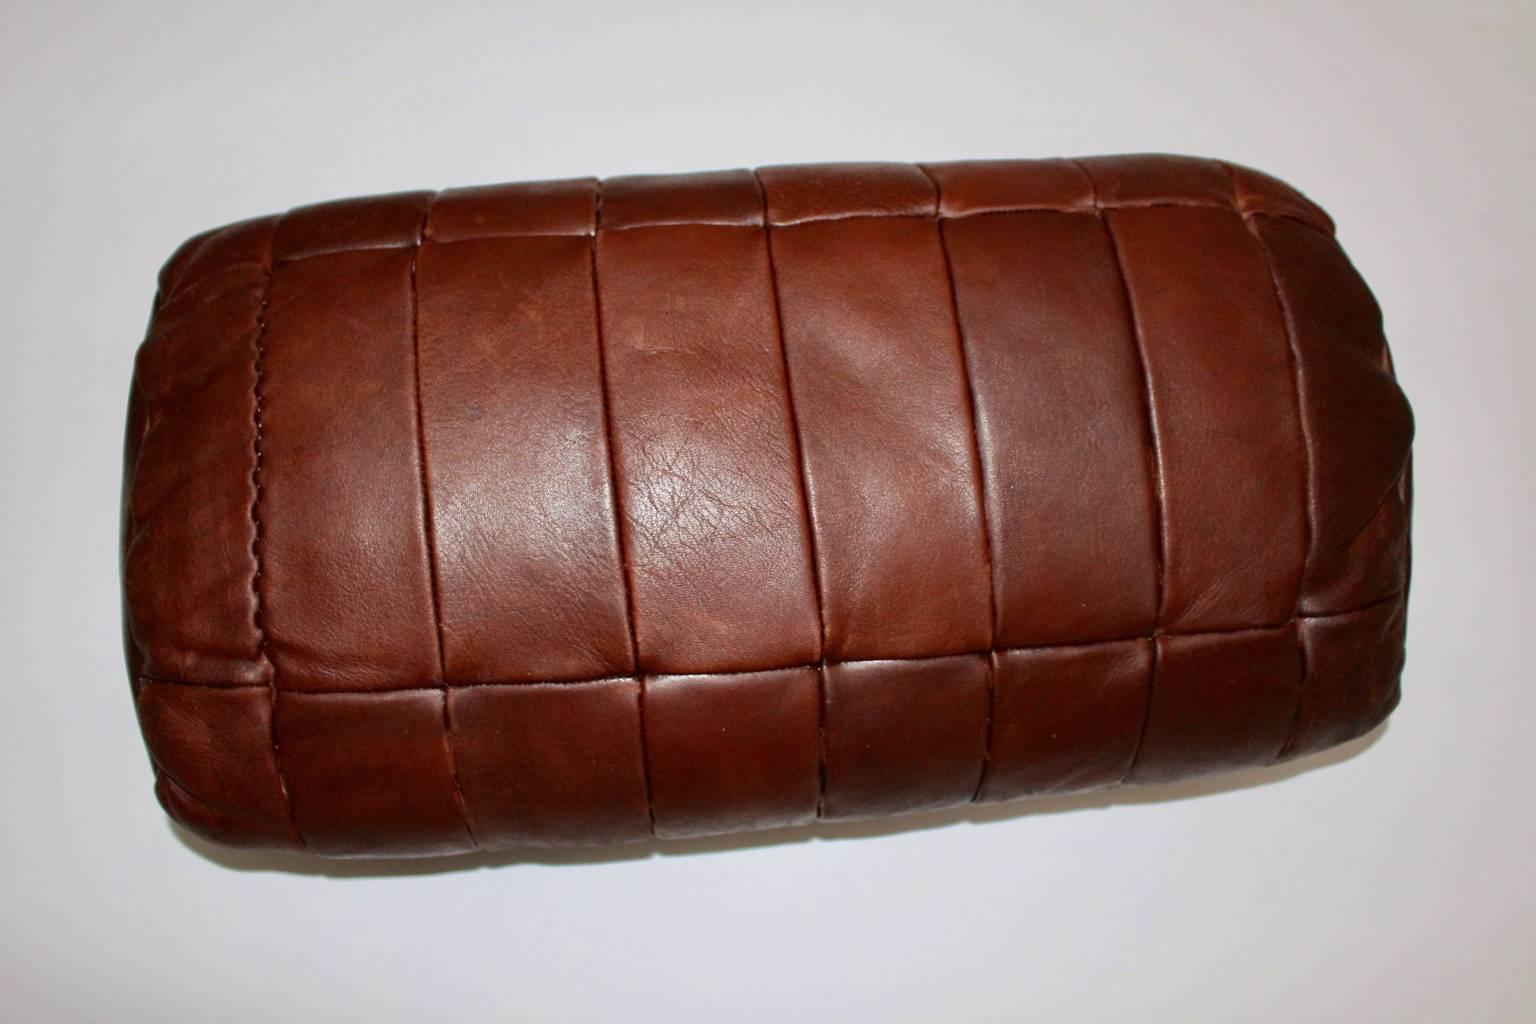  De Sede Cognac Leather Pillows, 1970s, Switzerland Set of Four 2